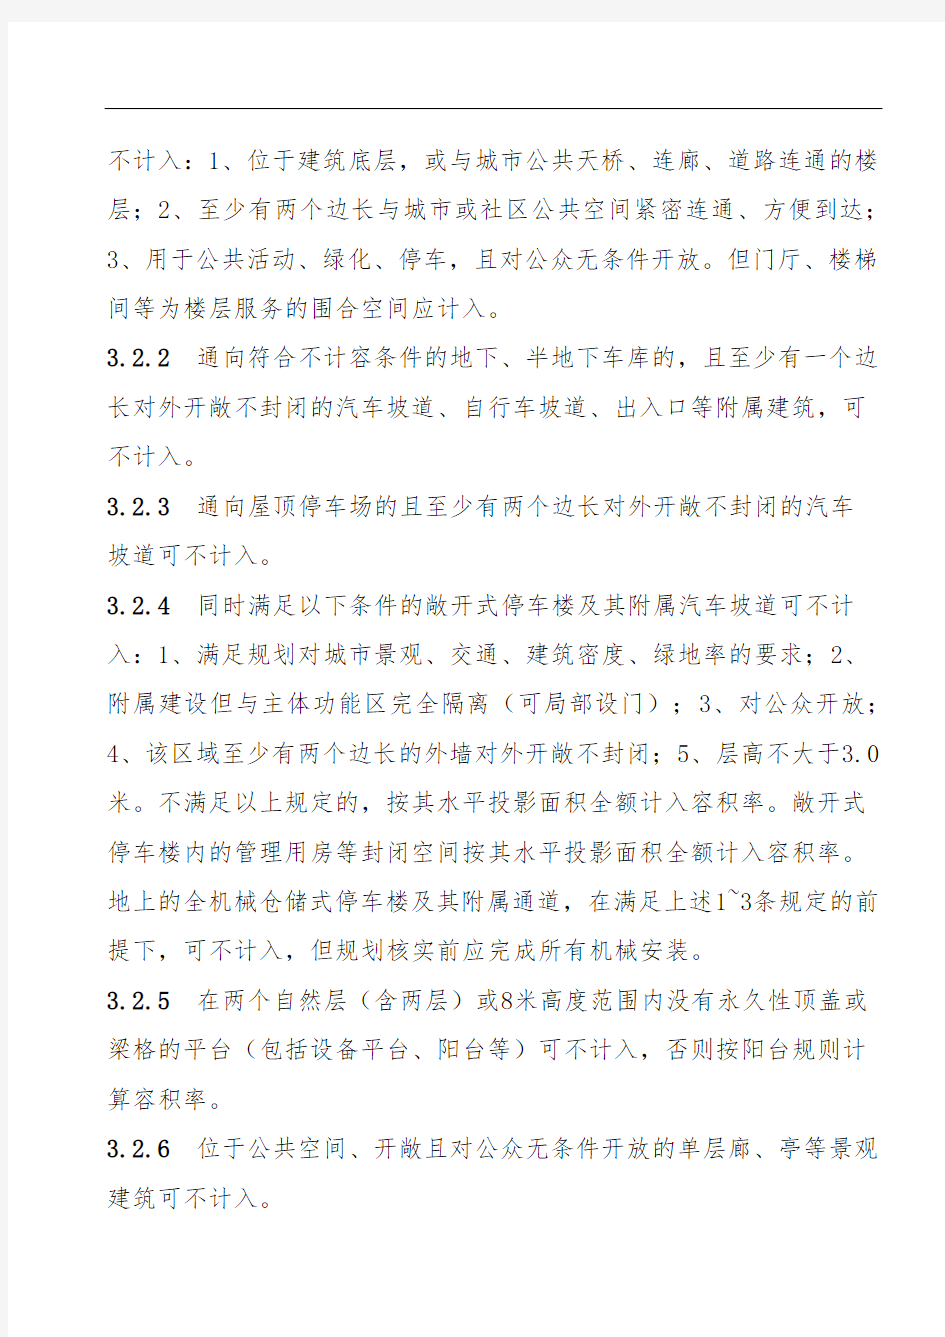 江苏省城市规划管理技术规定 ——苏州市实施细则之一“指标核定规则”(XX5年版)